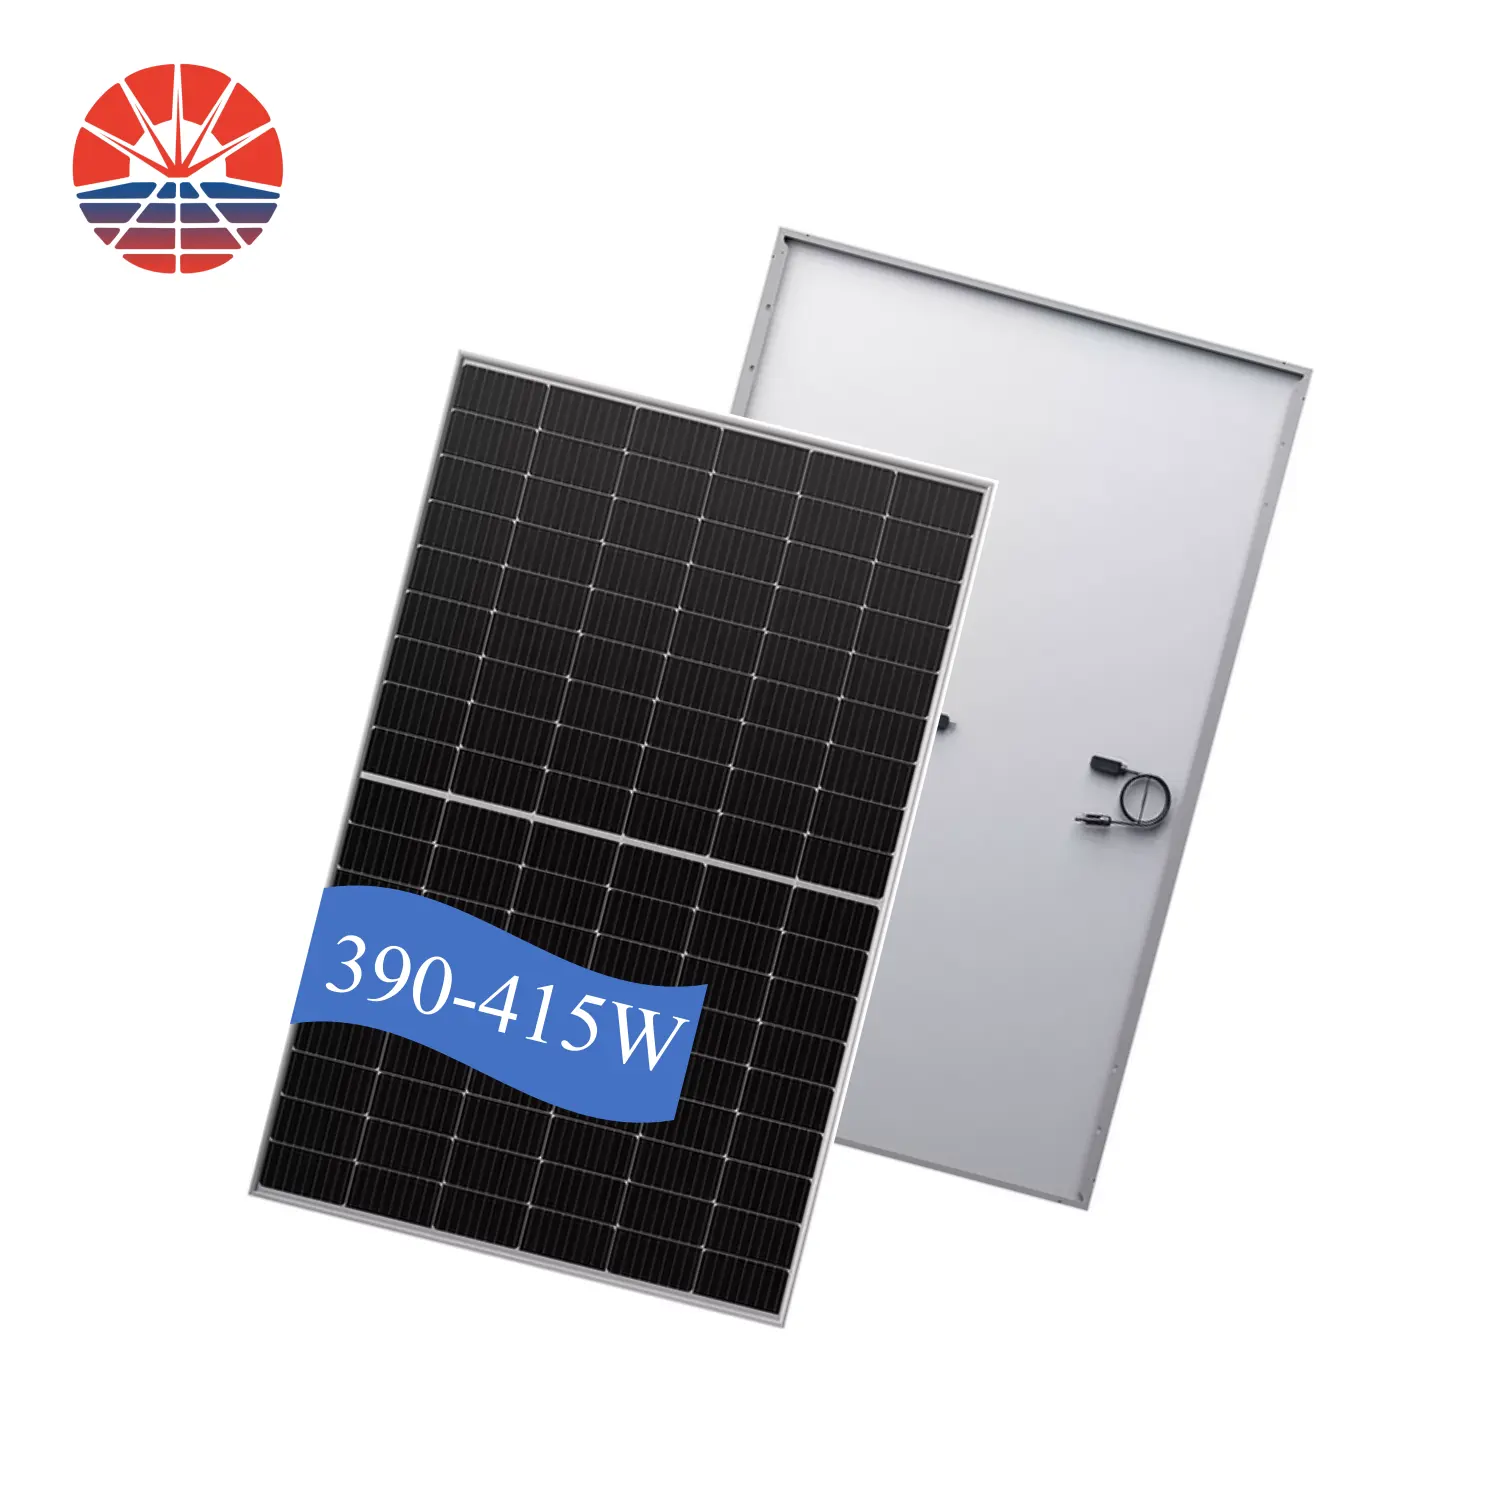 400 W 390W 400 W โมดูลแผงเซลล์แสงอาทิตย์ราคาขายส่ง REDSUN แผงเซลล์แสงอาทิตย์ทั้งหมด410วัตต์ราคาสำหรับบ้าน